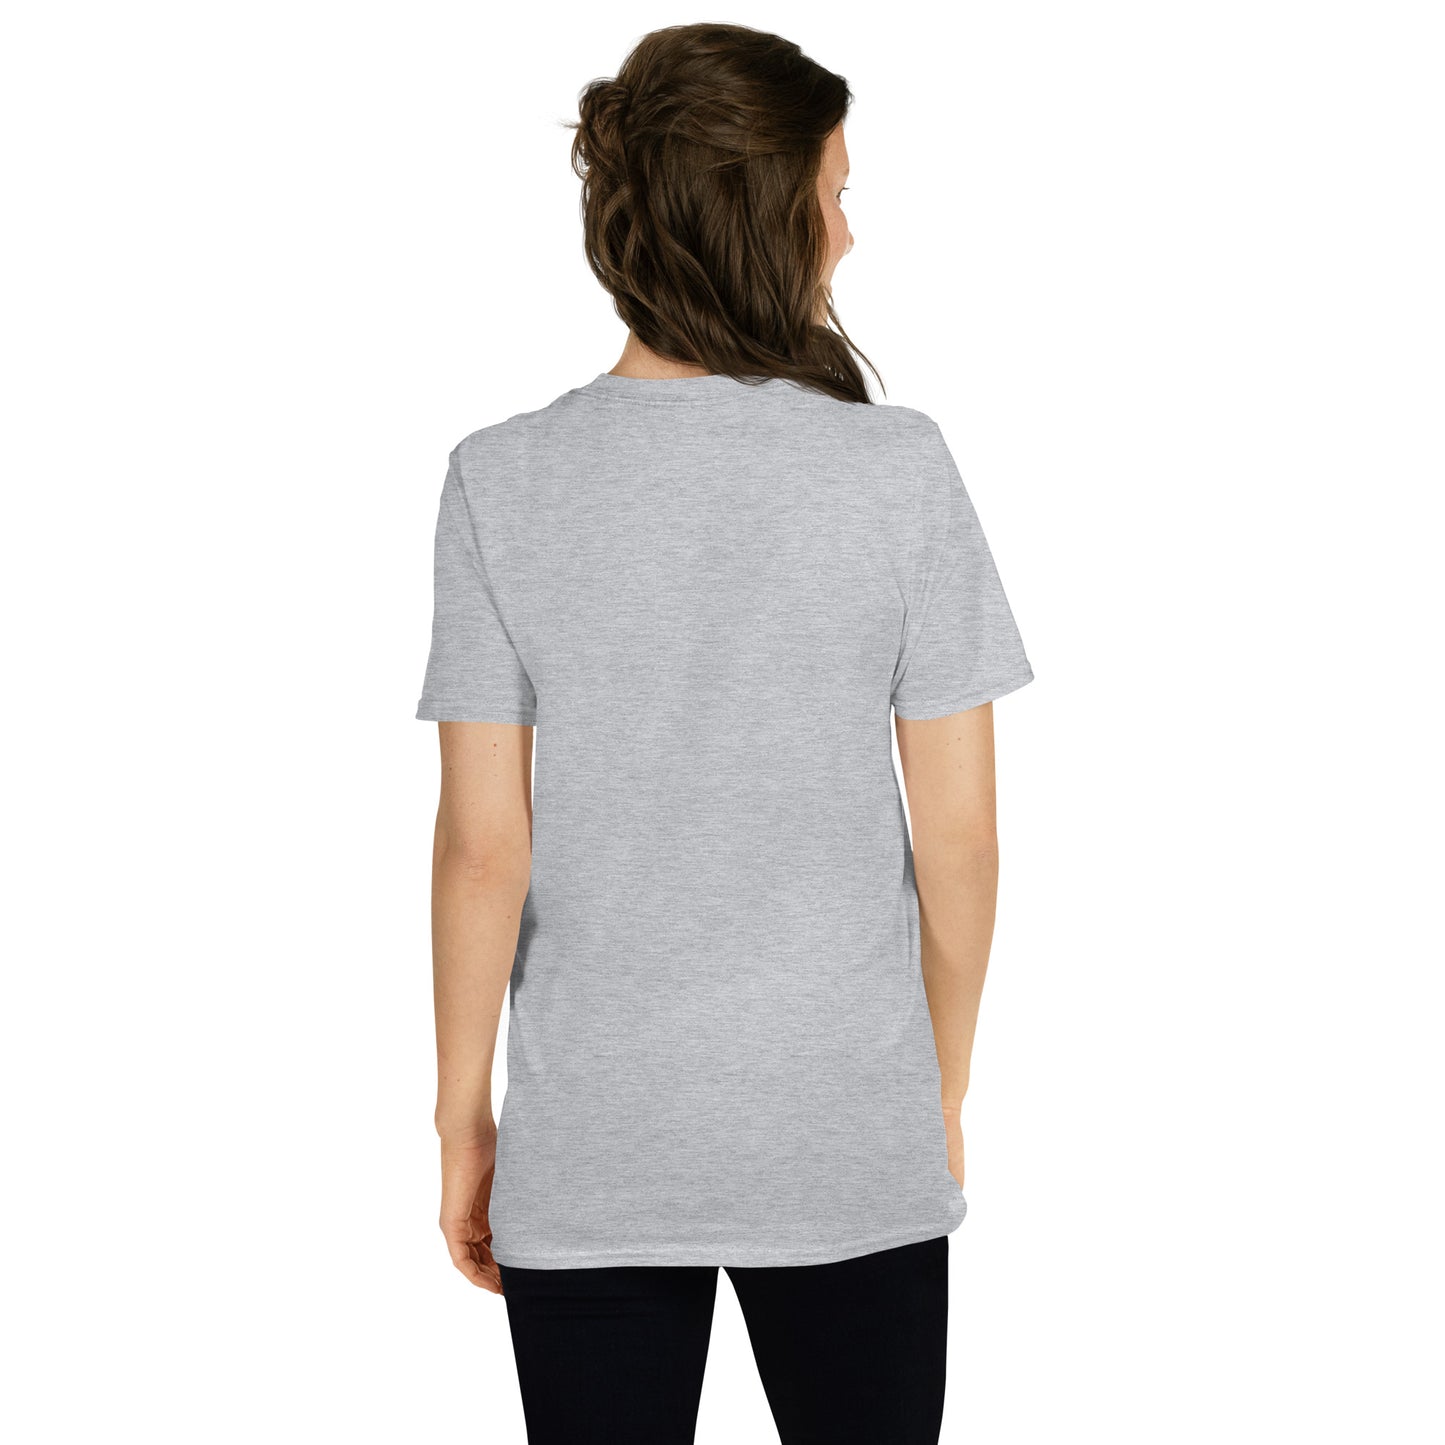 Psychological Safety Matters Vintage bird design Short-Sleeve Unisex T-Shirt